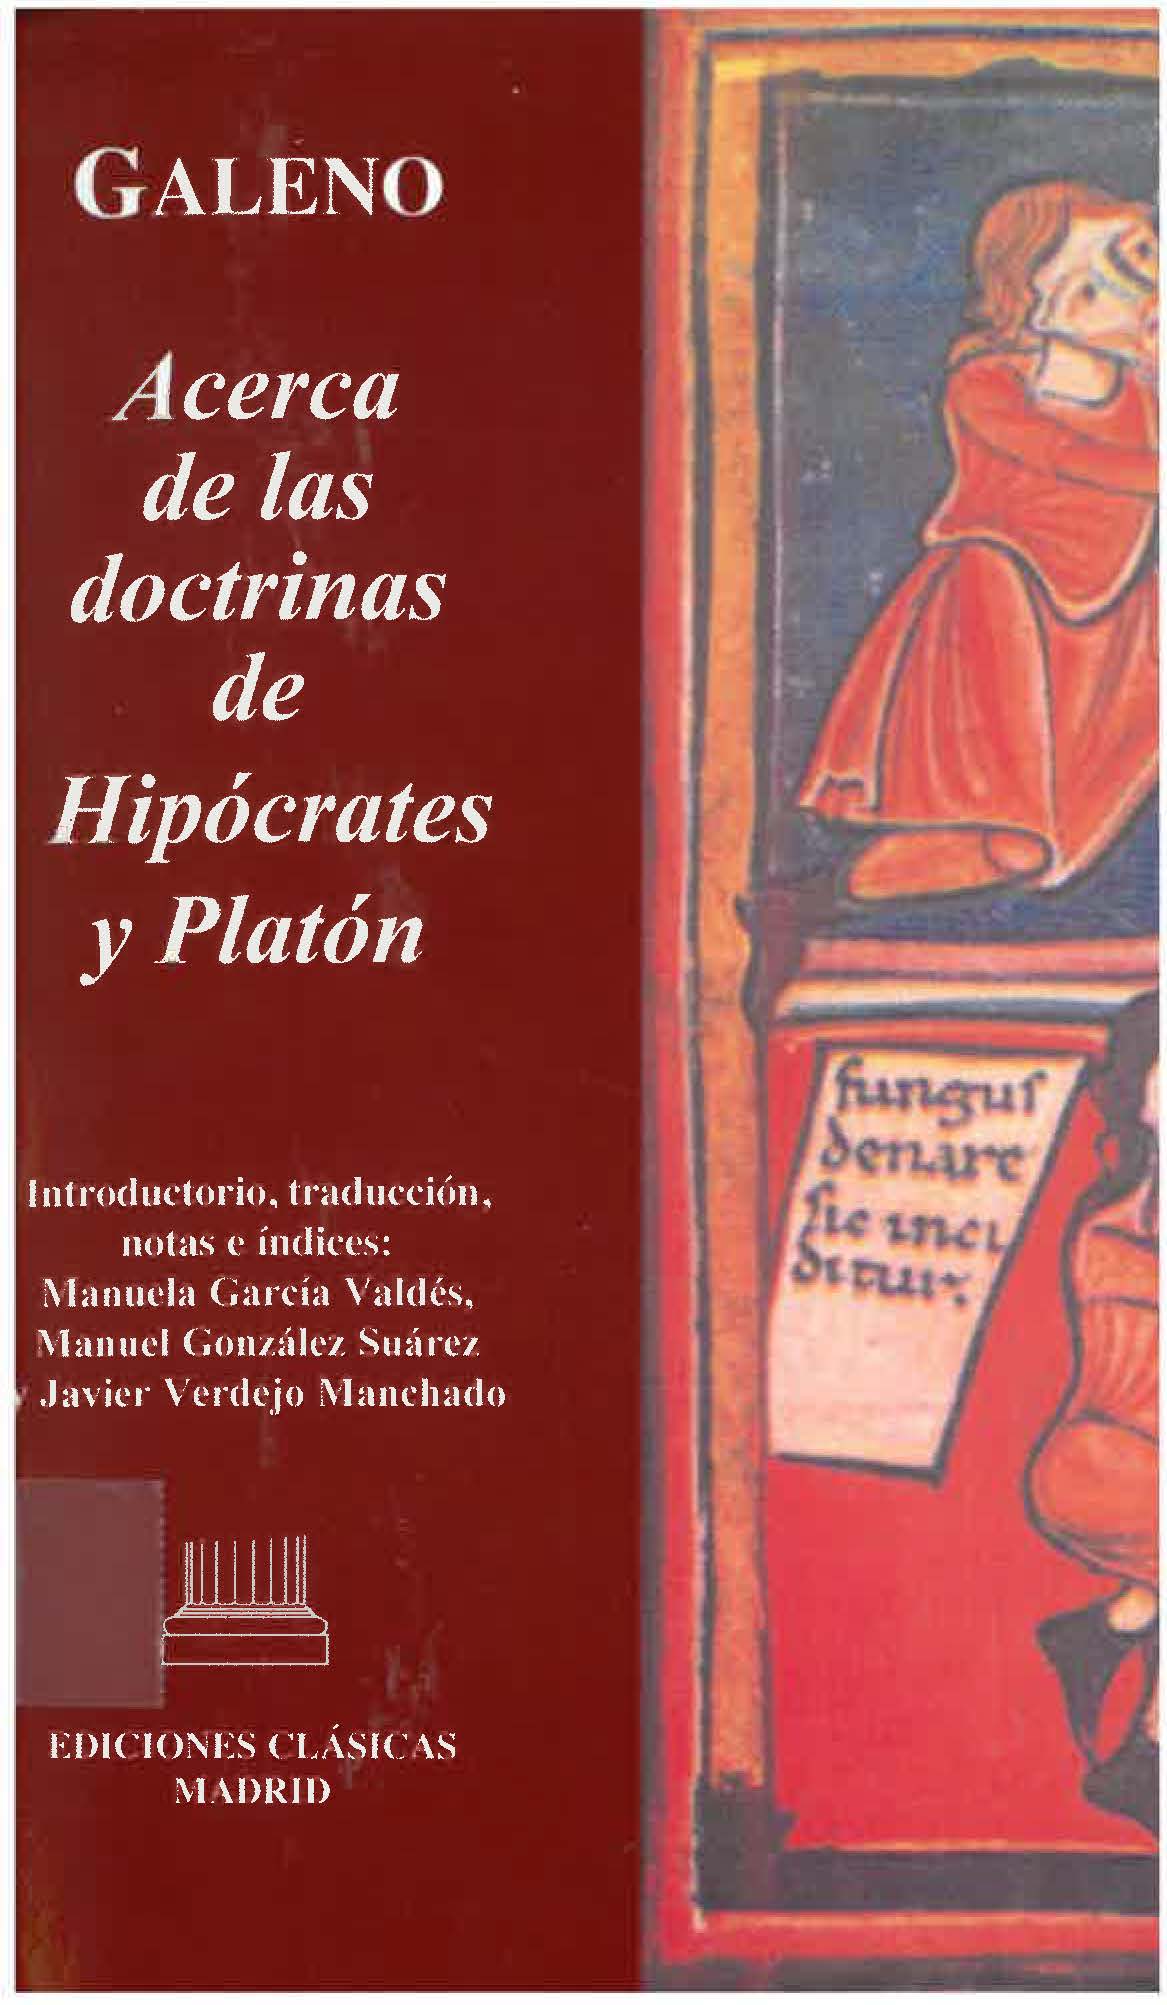 Imagen de portada del libro Acerca de las doctrinas de Hipócrates y Platón